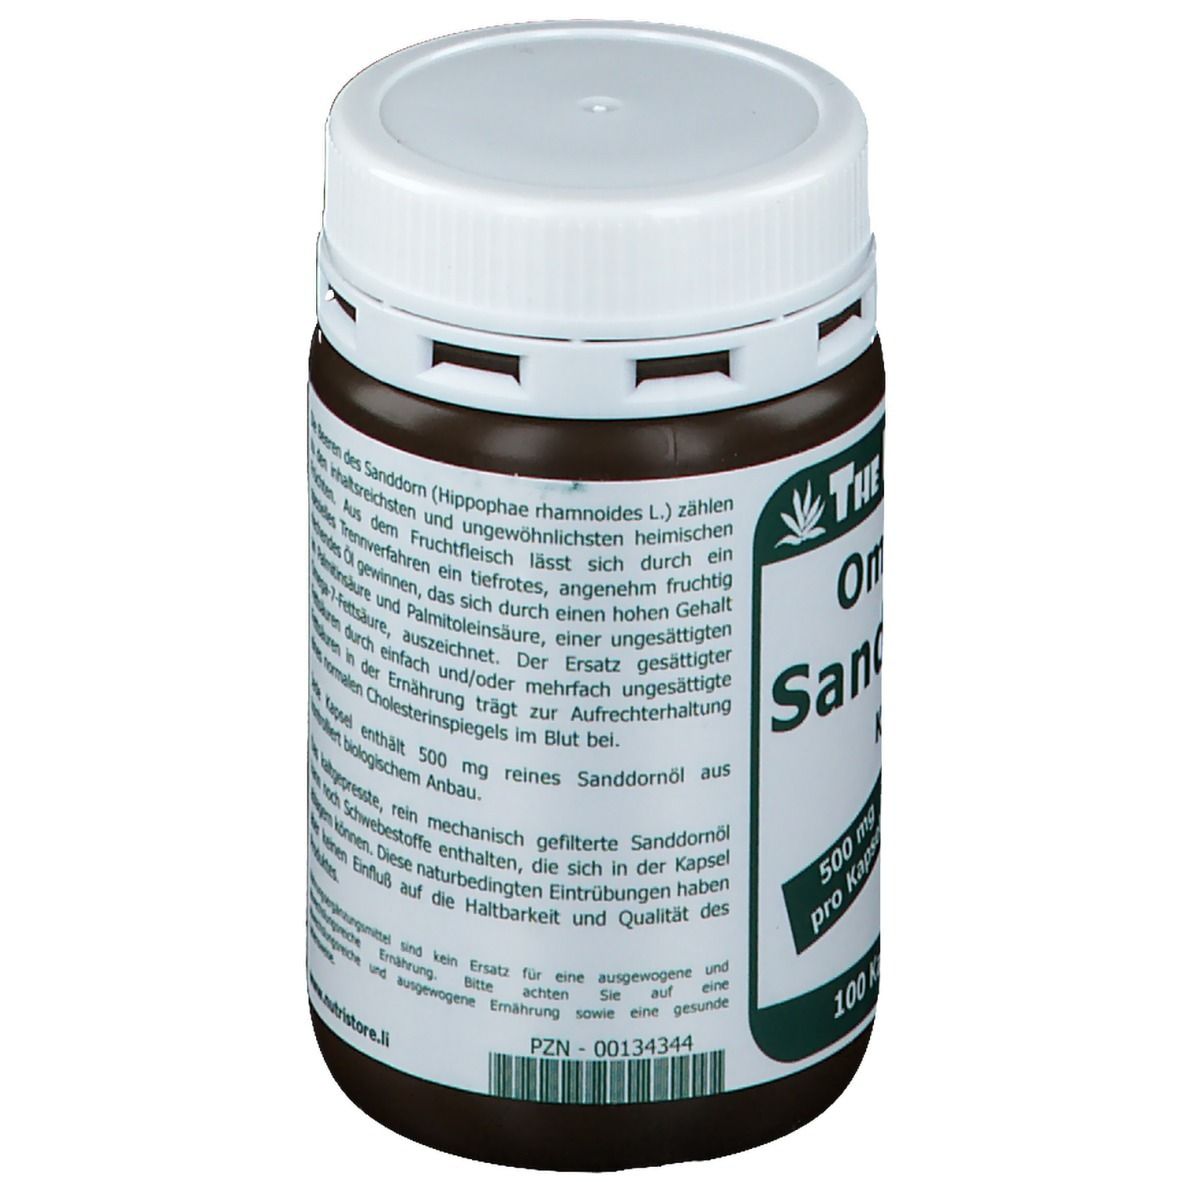 Omega -7 Sanddornöl 500 mg